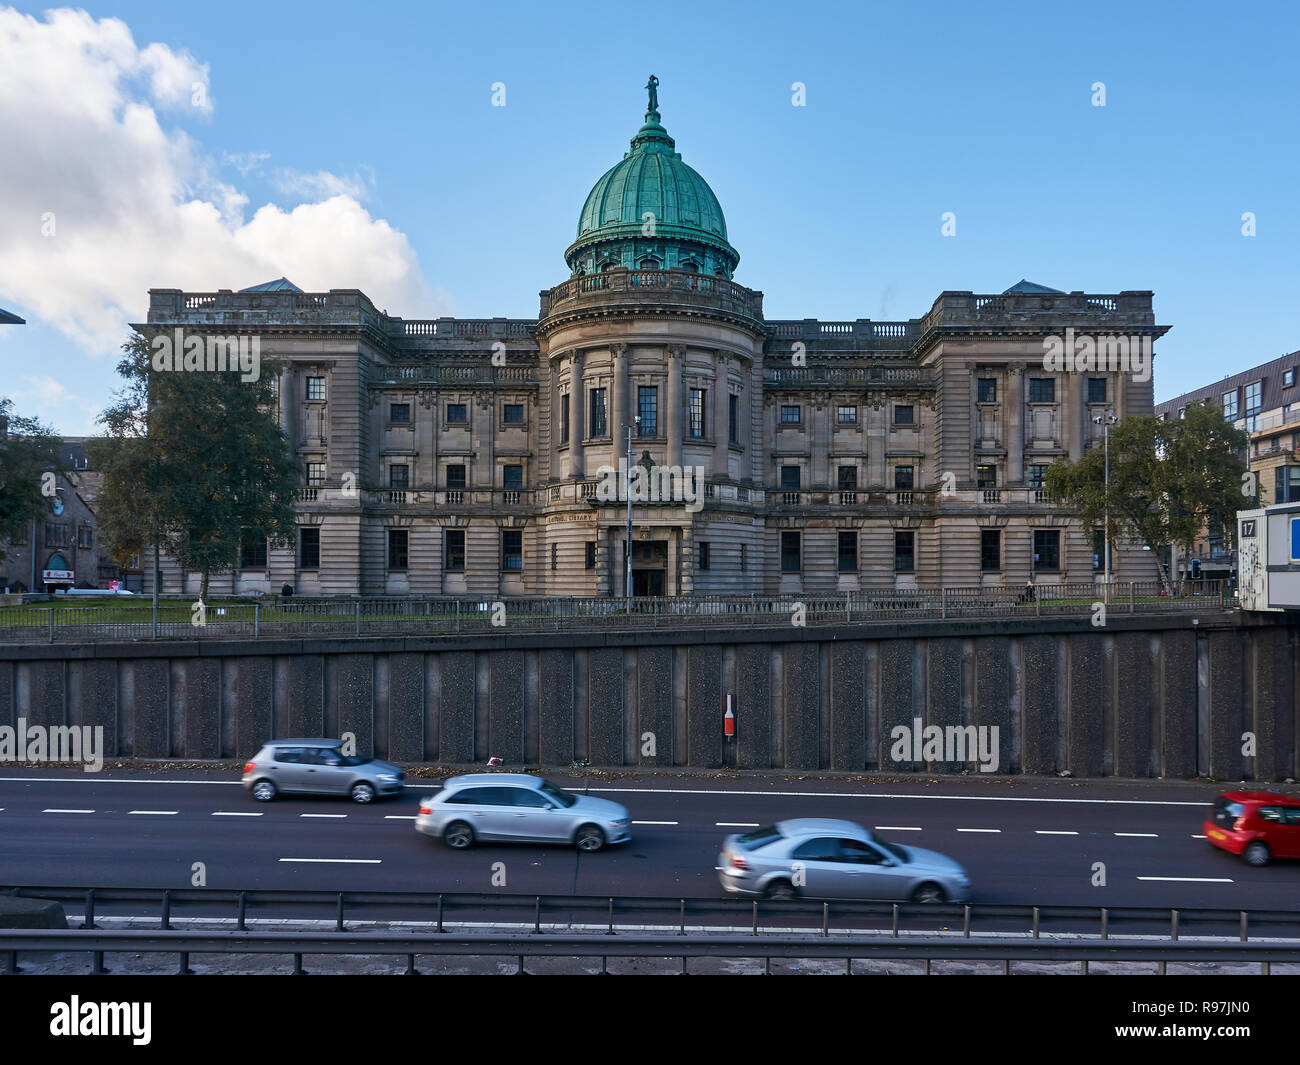 Glasgow, Vereinigtes Königreich: 17. Oktober 2018 - Äußere einer Mitchell Library Gebäude neben anM 8 Autobahn in Glasgow positioniert. Stockfoto